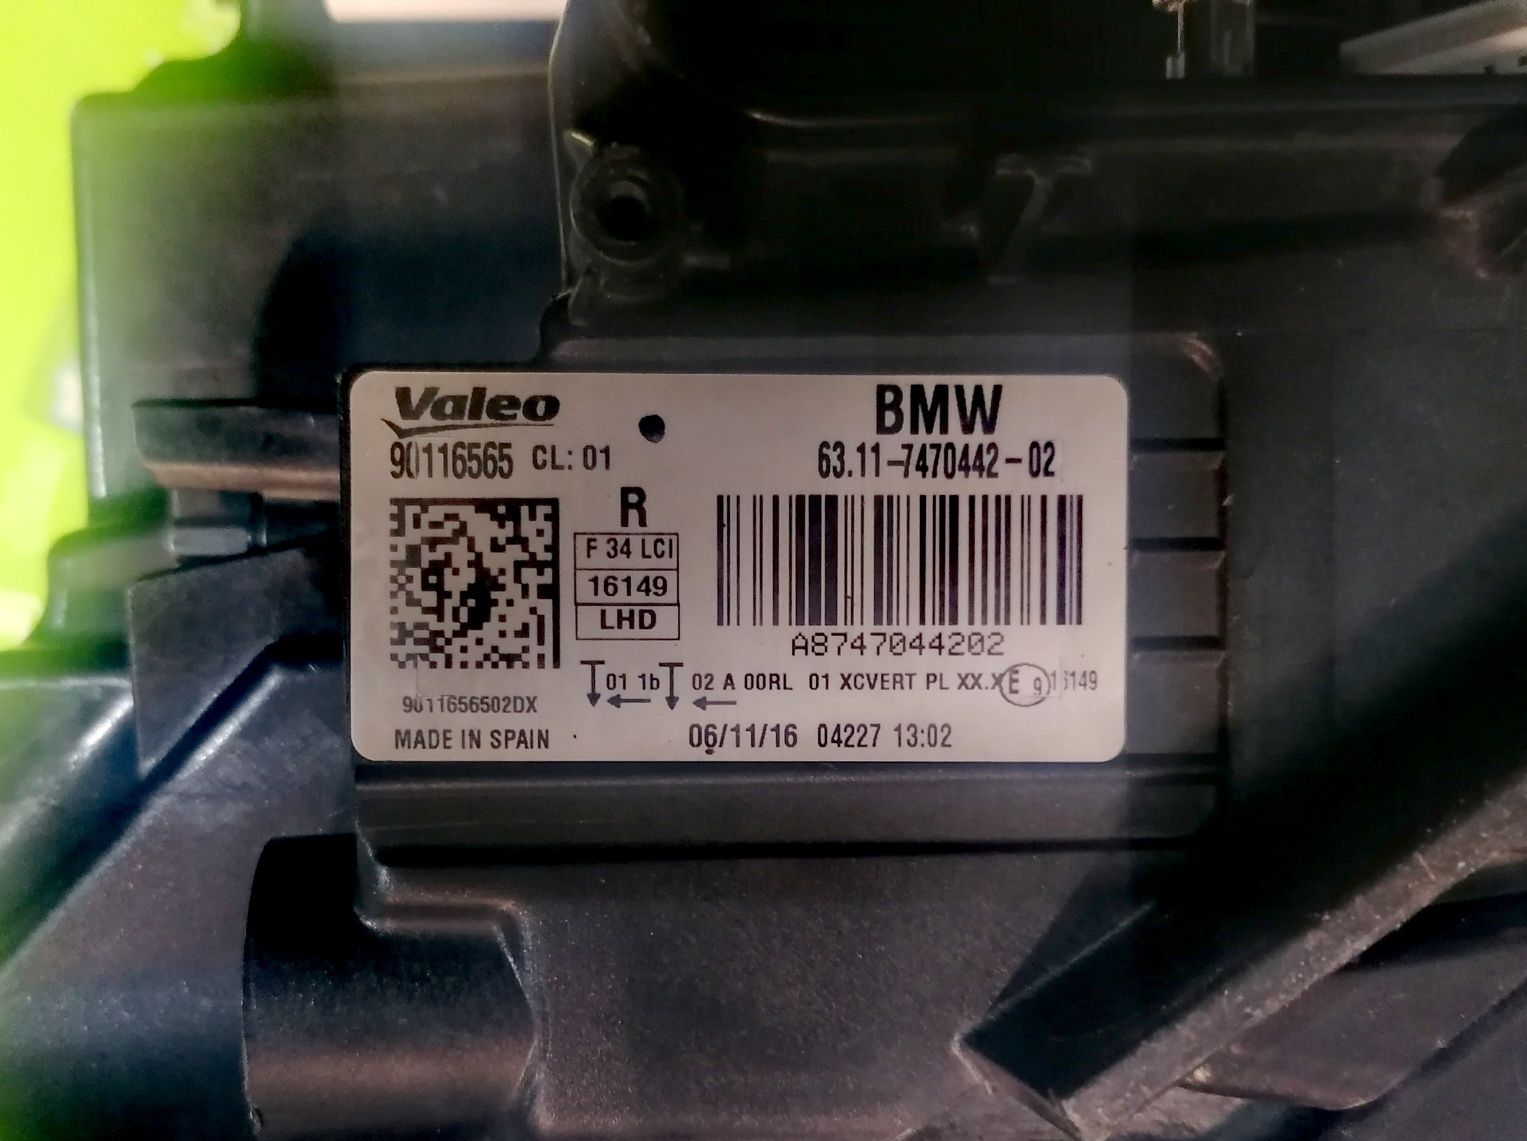 Фар Фарове за БМВ 3 Ф34 ГТ / BMW F34 GT Adaptive LED LCI.